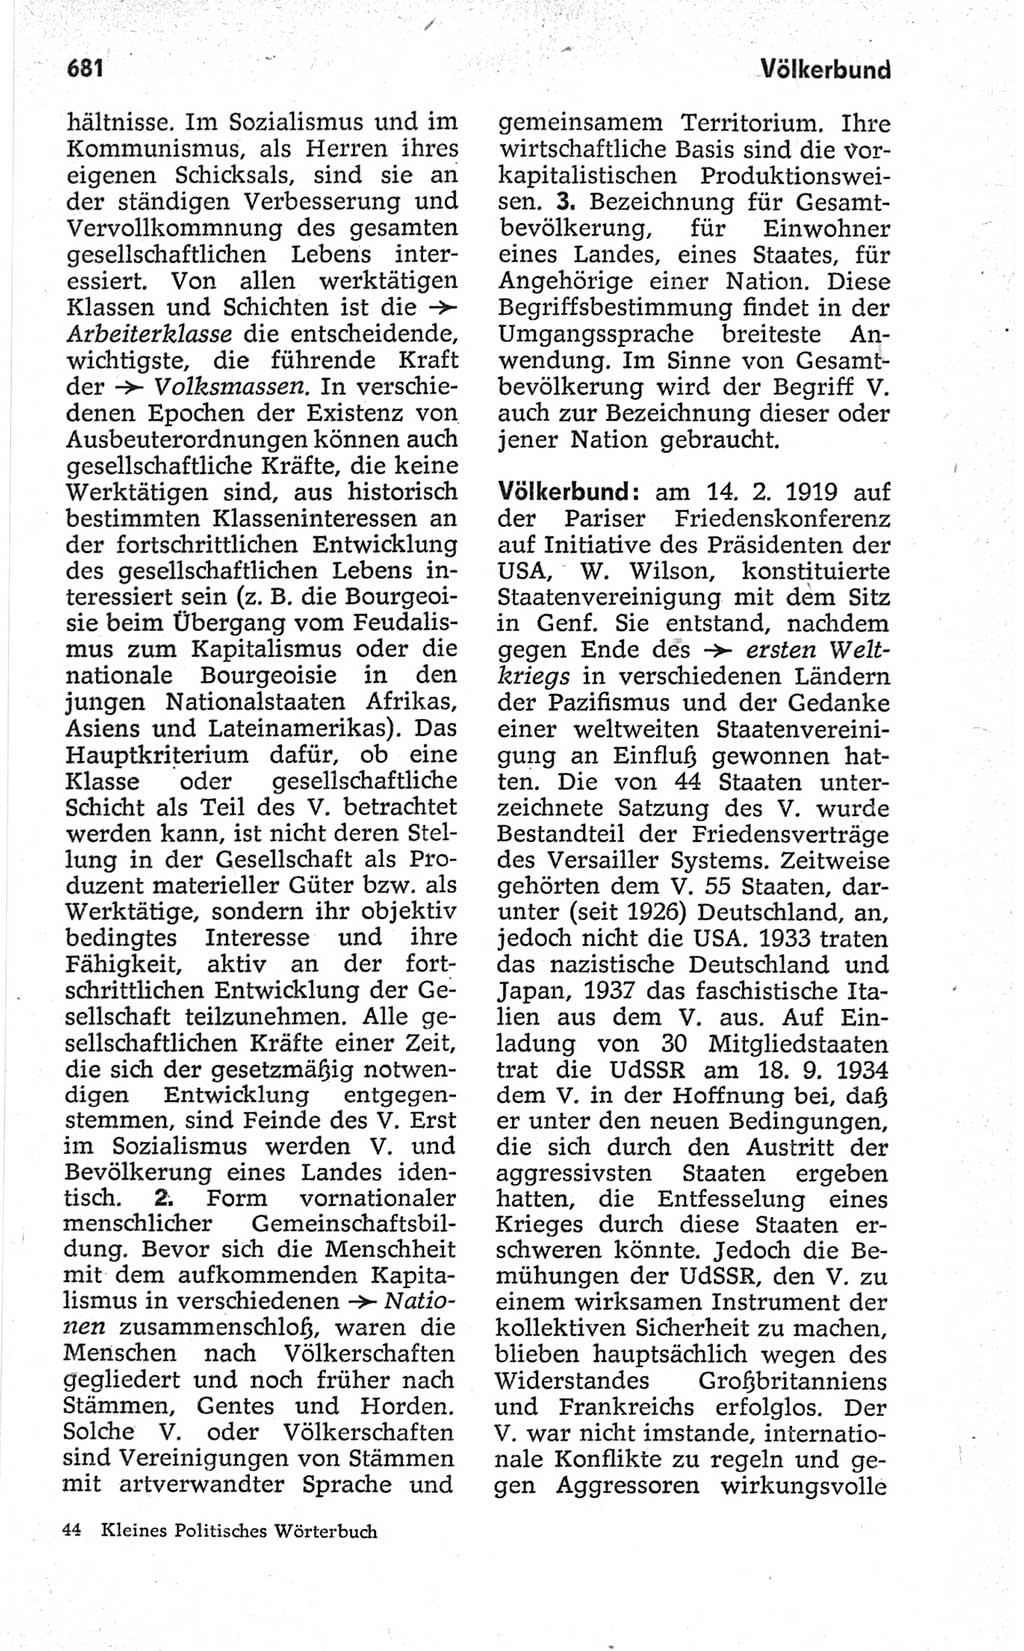 Kleines politisches Wörterbuch [Deutsche Demokratische Republik (DDR)] 1967, Seite 681 (Kl. pol. Wb. DDR 1967, S. 681)